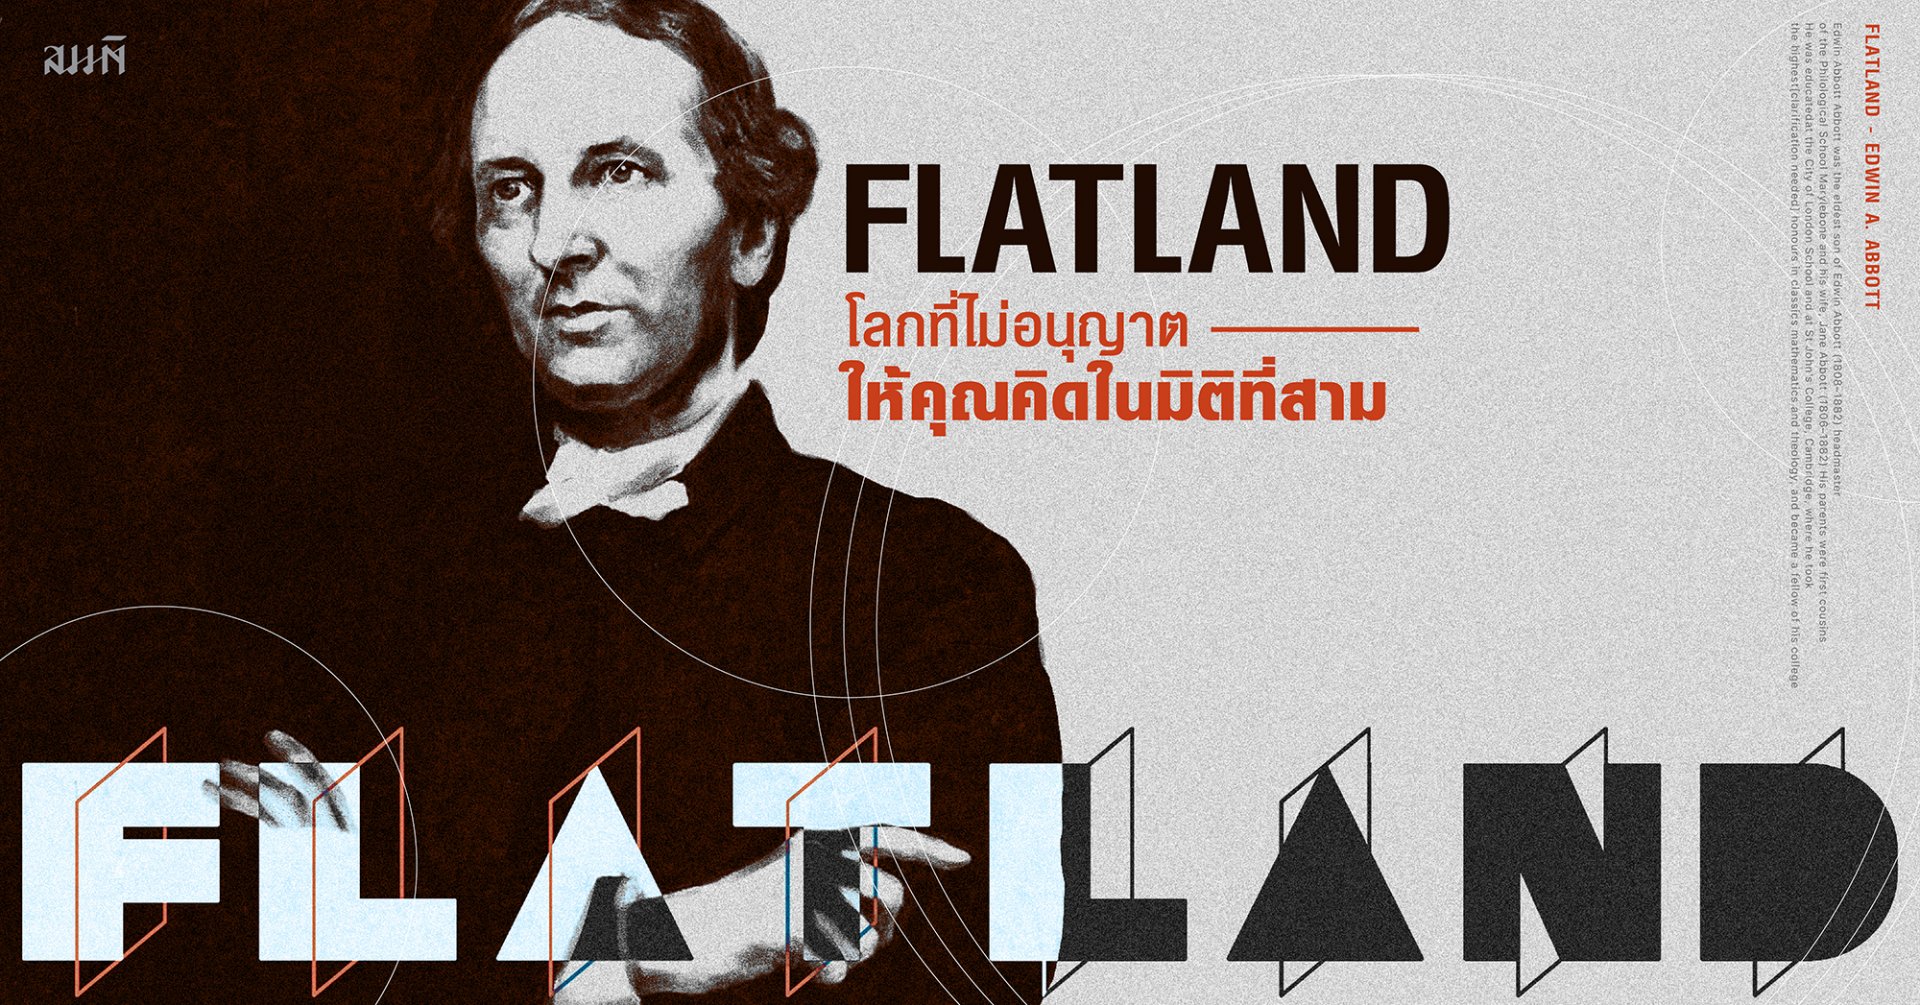 Flatland: การผจญภัยทางคณิตศาสตร์ในโลกระนาบที่น่าทึ่ง